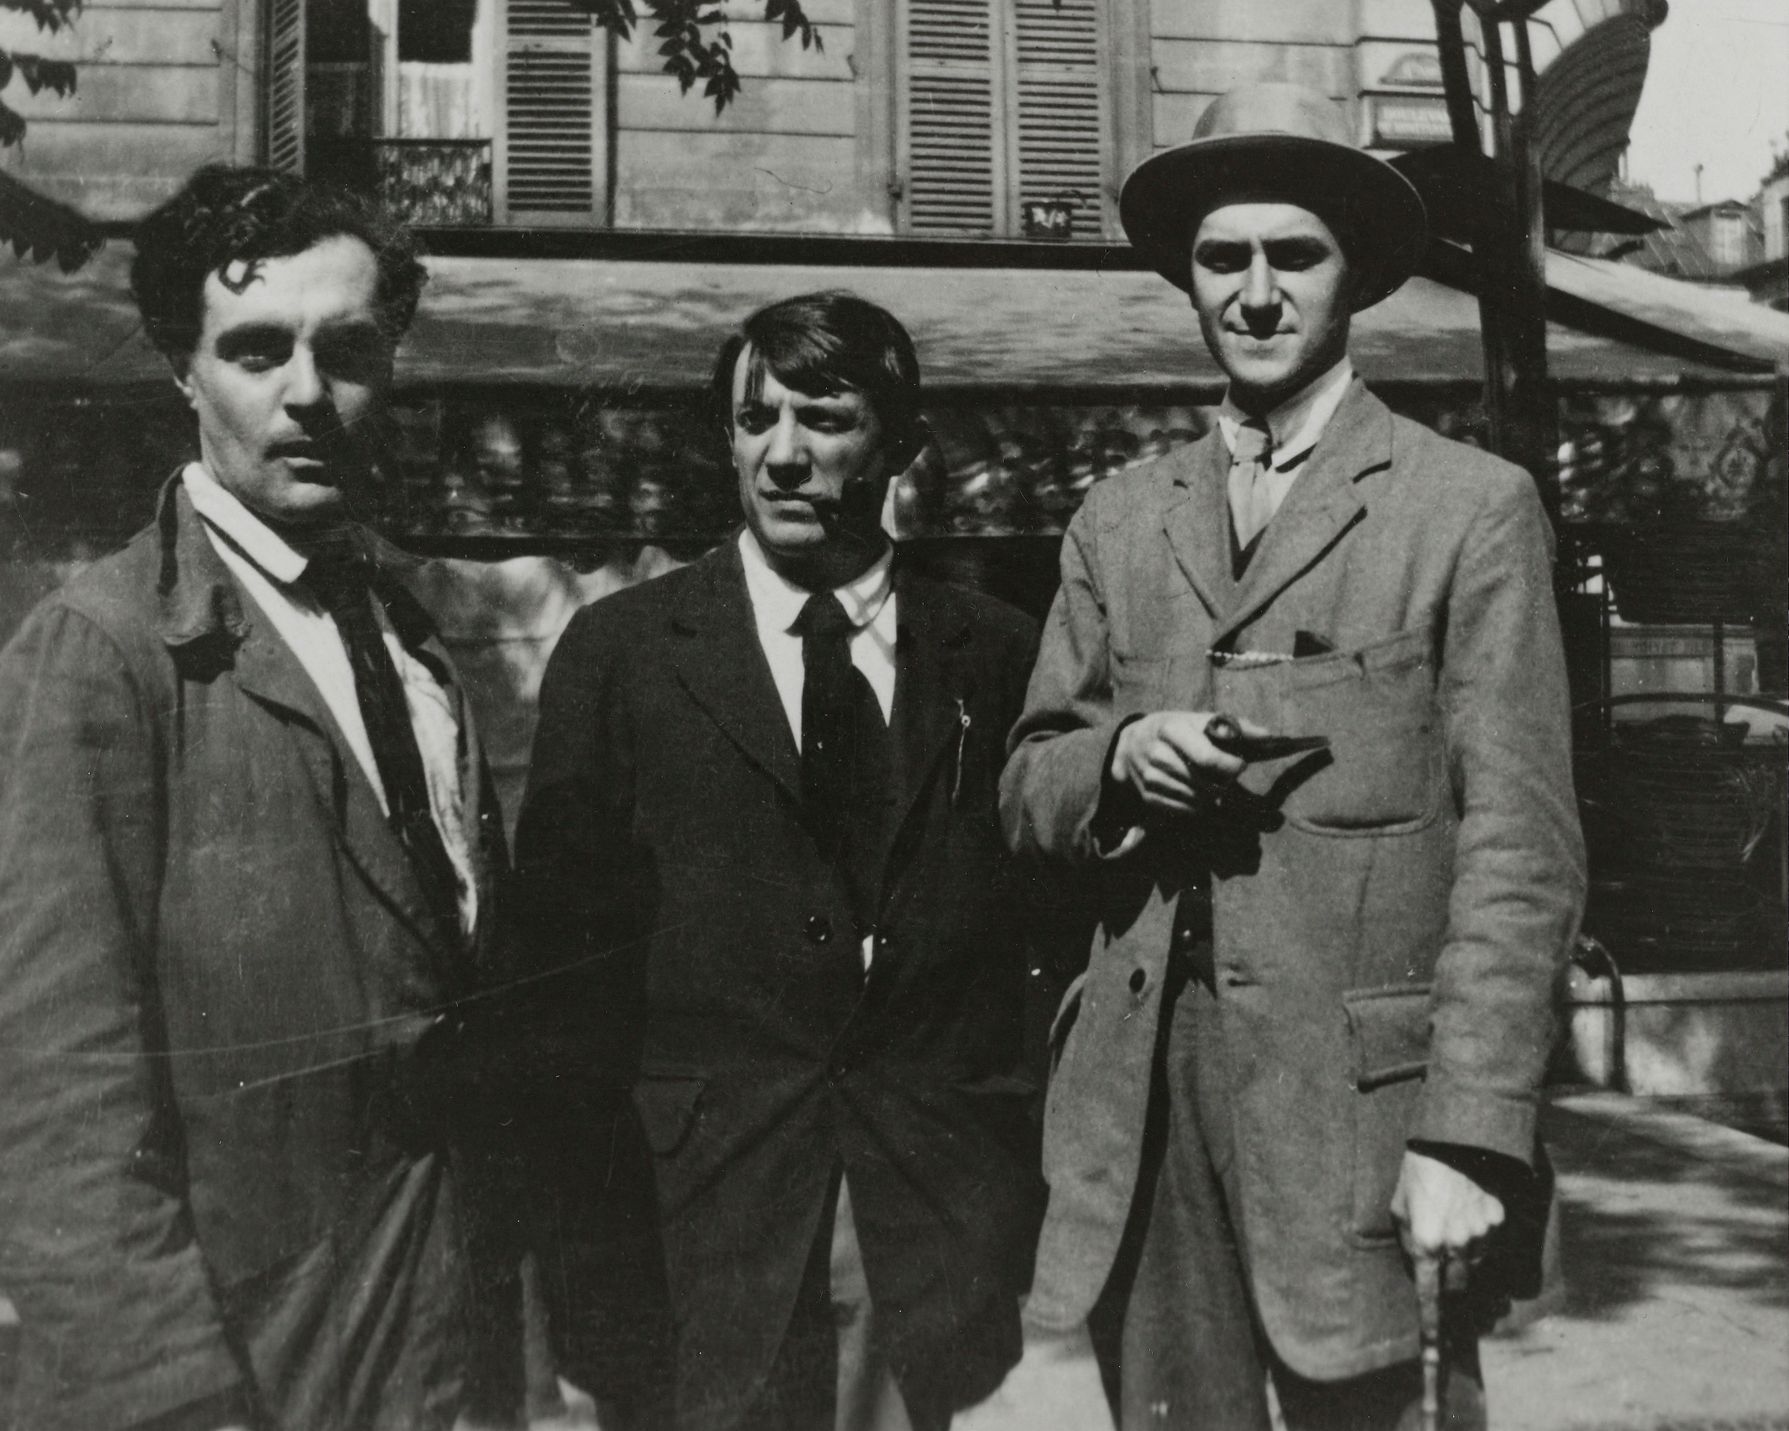 Amedeo Modigliani, Pablo Picasso, André Salmon